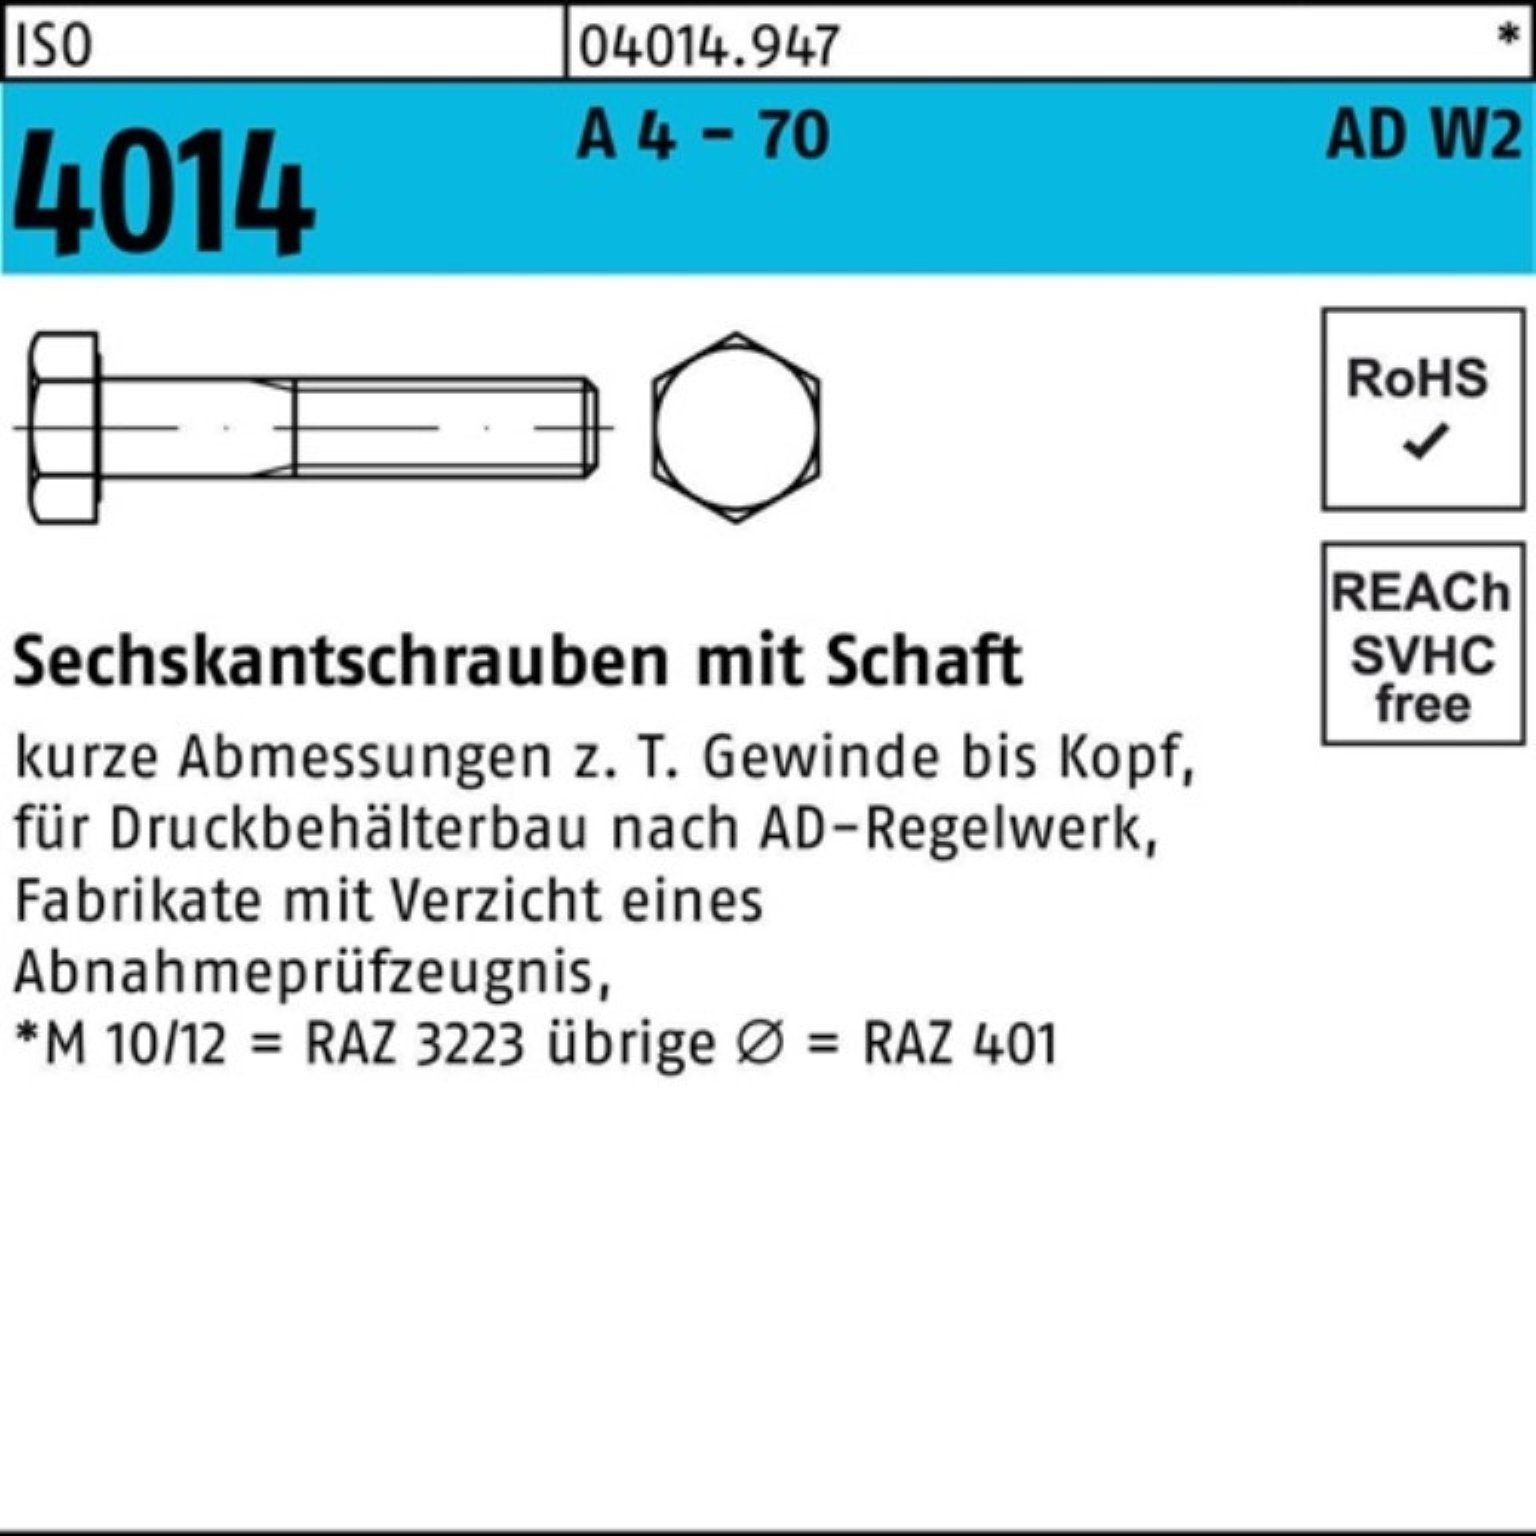 Bufab Sechskantschraube 100er Pack Sechskantschraube ISO 4014 Schaft M20x 160 A 4 - 70 AD-W2 1